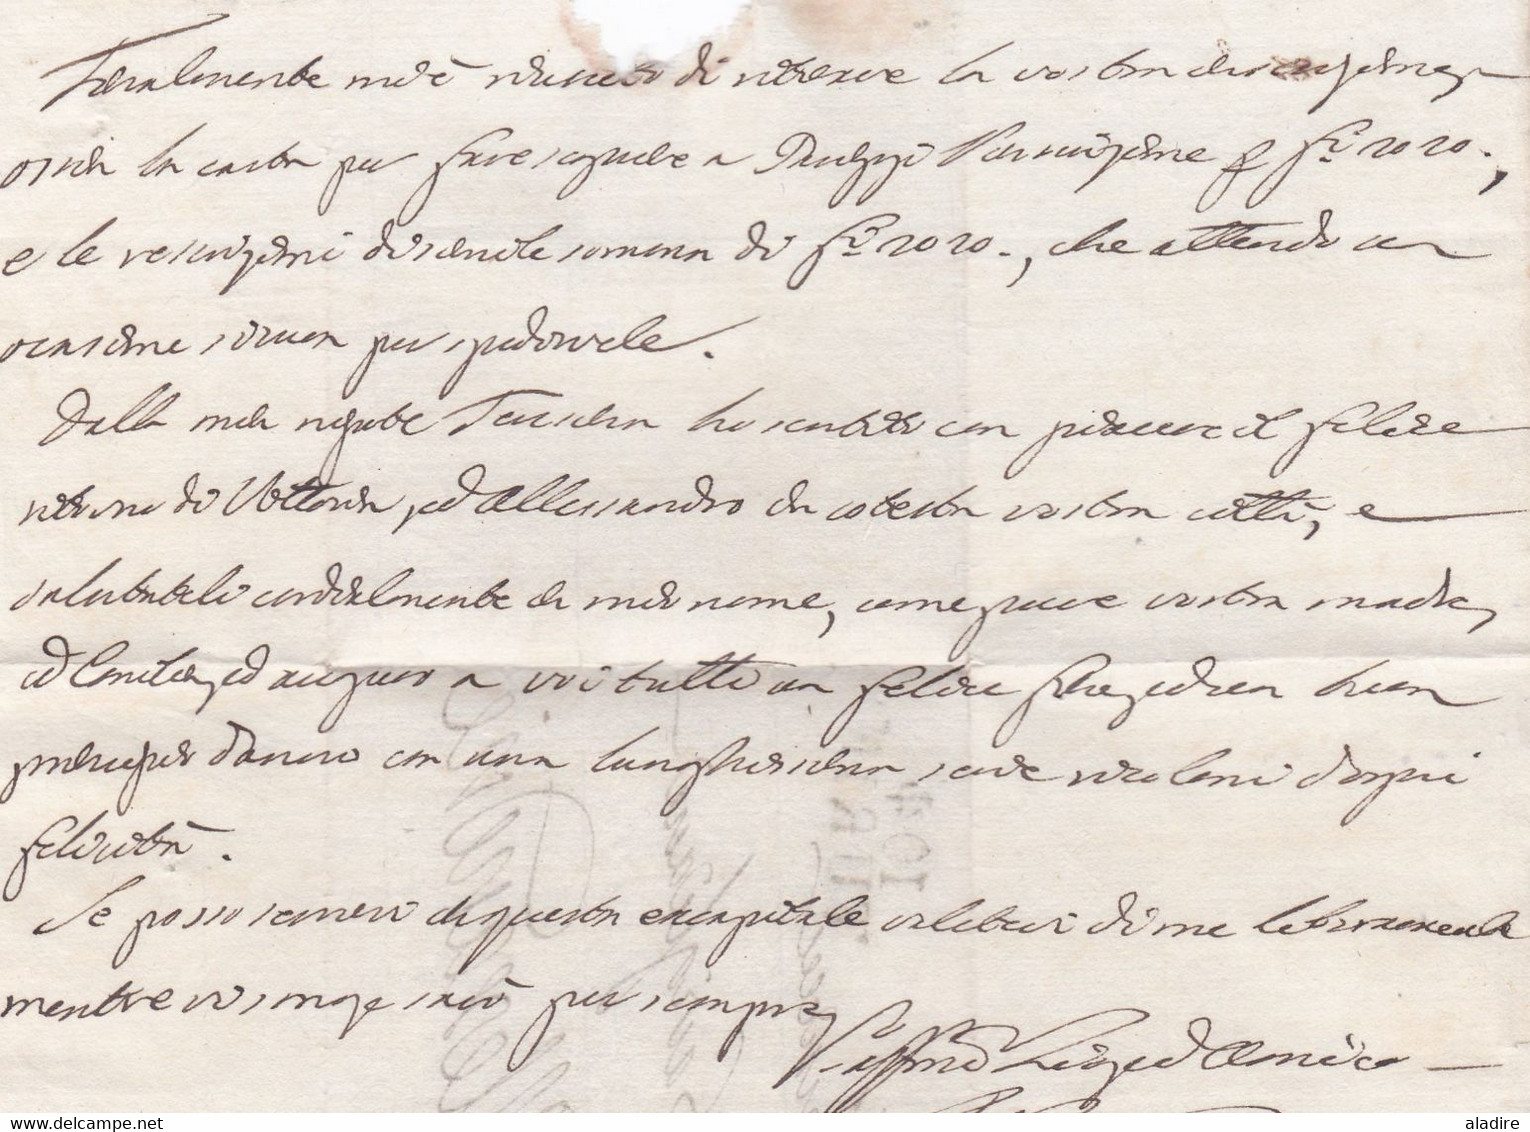 1810 - Marque postale 104 TURIN Torino sur LAC en italien vers ALEXANDRIE, département conquis de MARENGO